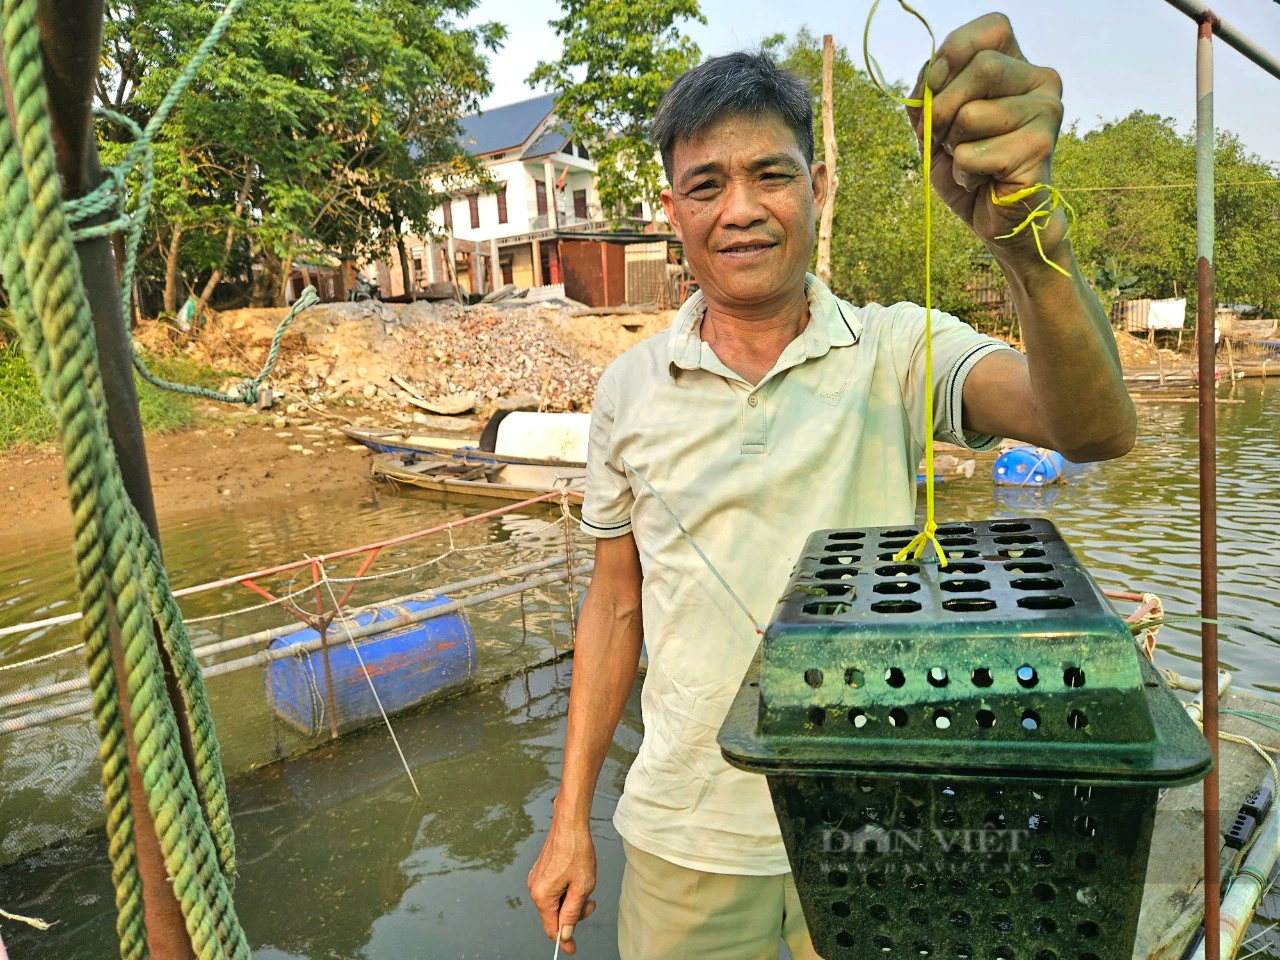 Nuôi cá chẽm, cá dìa, cua ngon ở một ngã 3 sông nổi tiếng ở Quảng Bình, tưởng liều mà hóa hay- Ảnh 2.